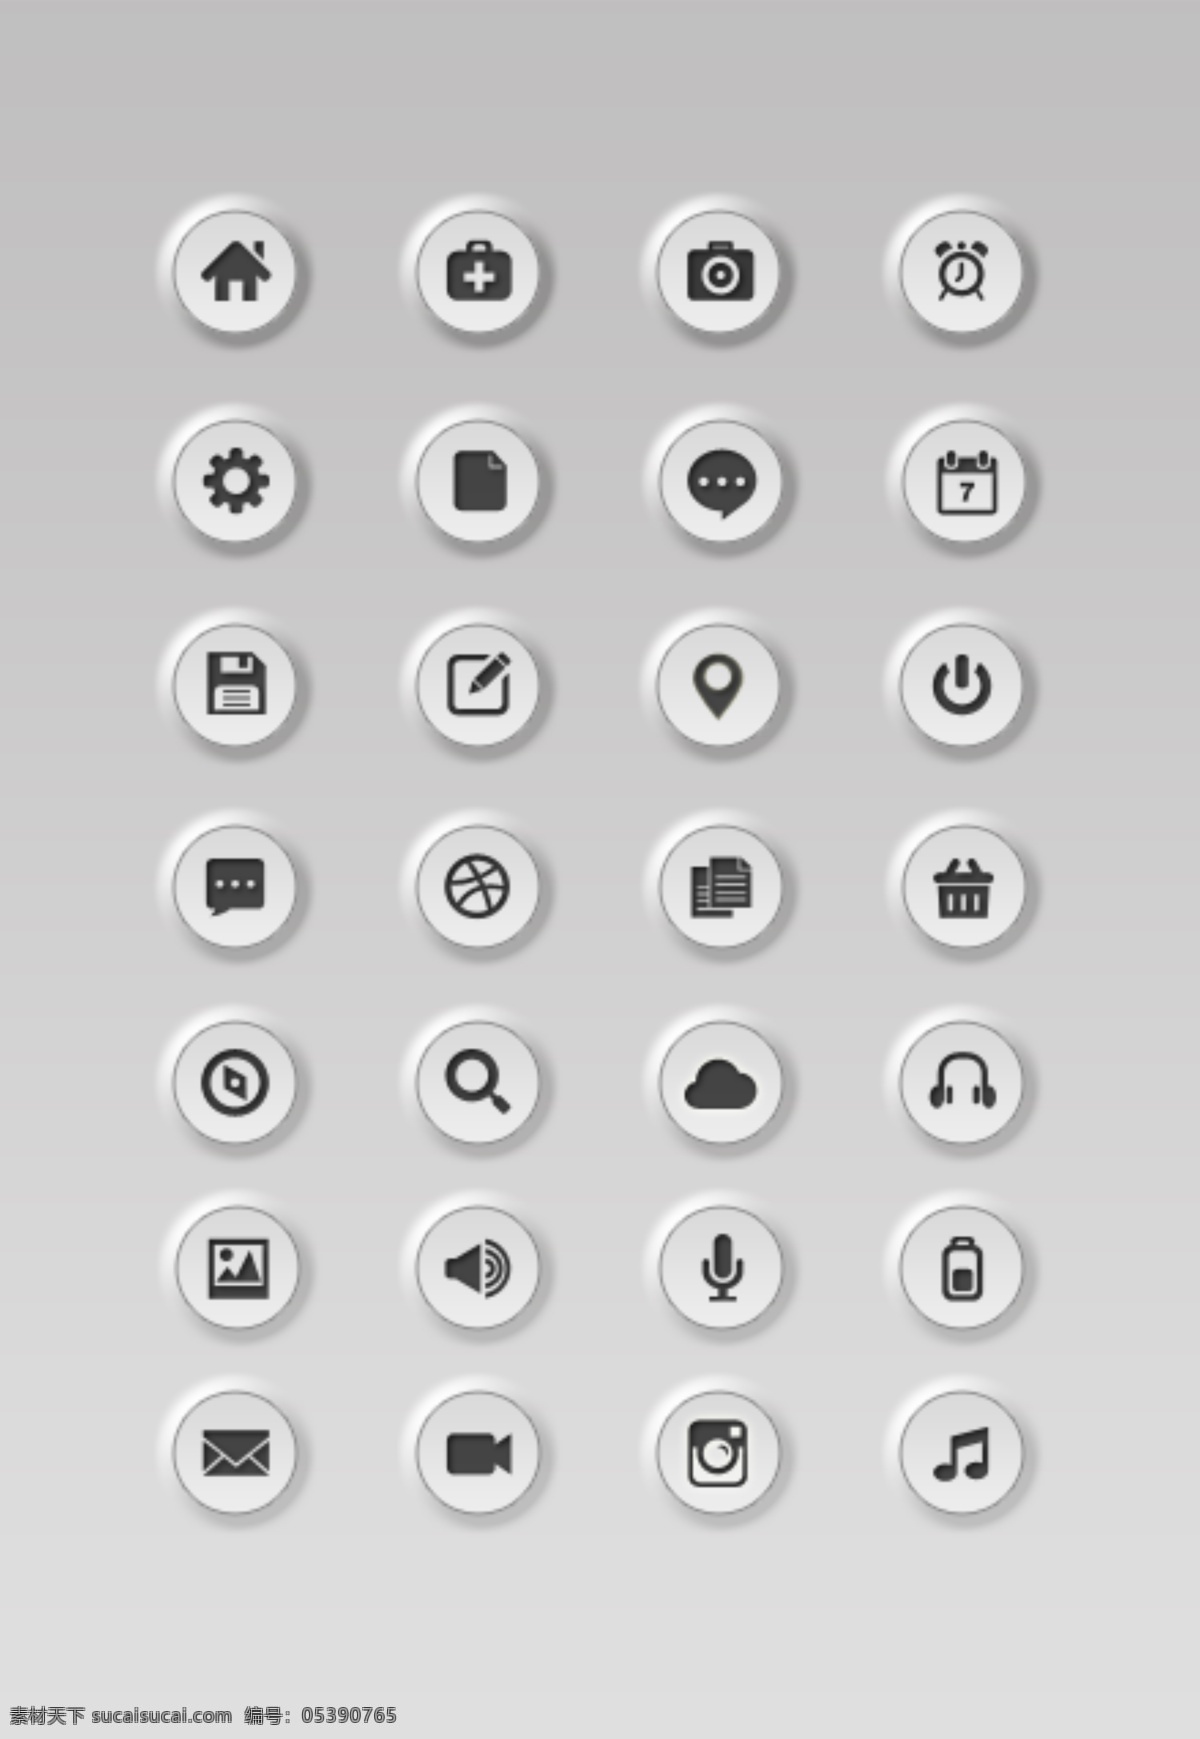 按钮 型 图标 psd源文件 圆形 按钮型 凹凸型 含 预览 图 手机 app app图标